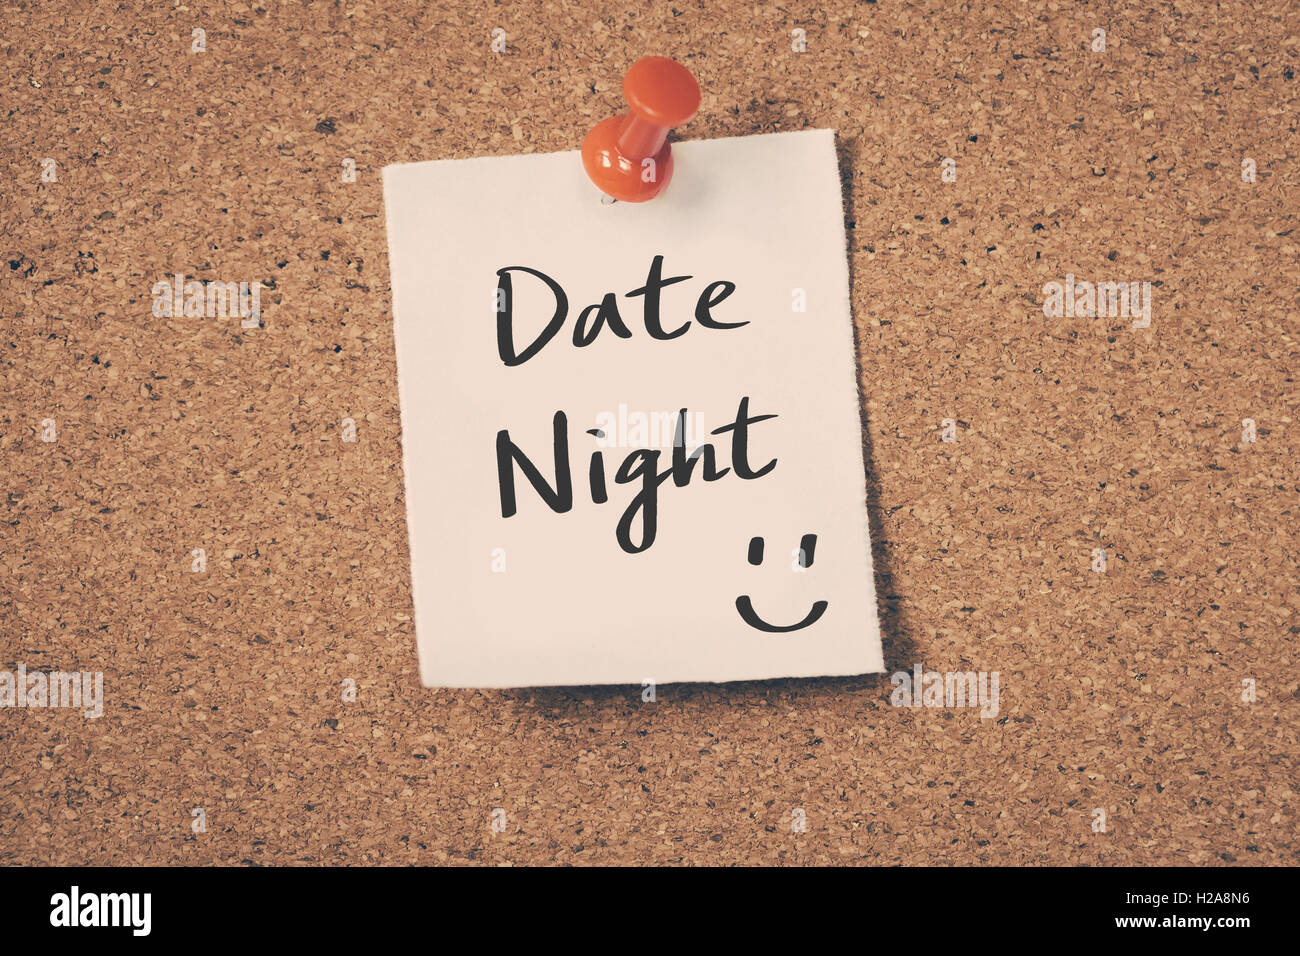 Date Night Stock Photo